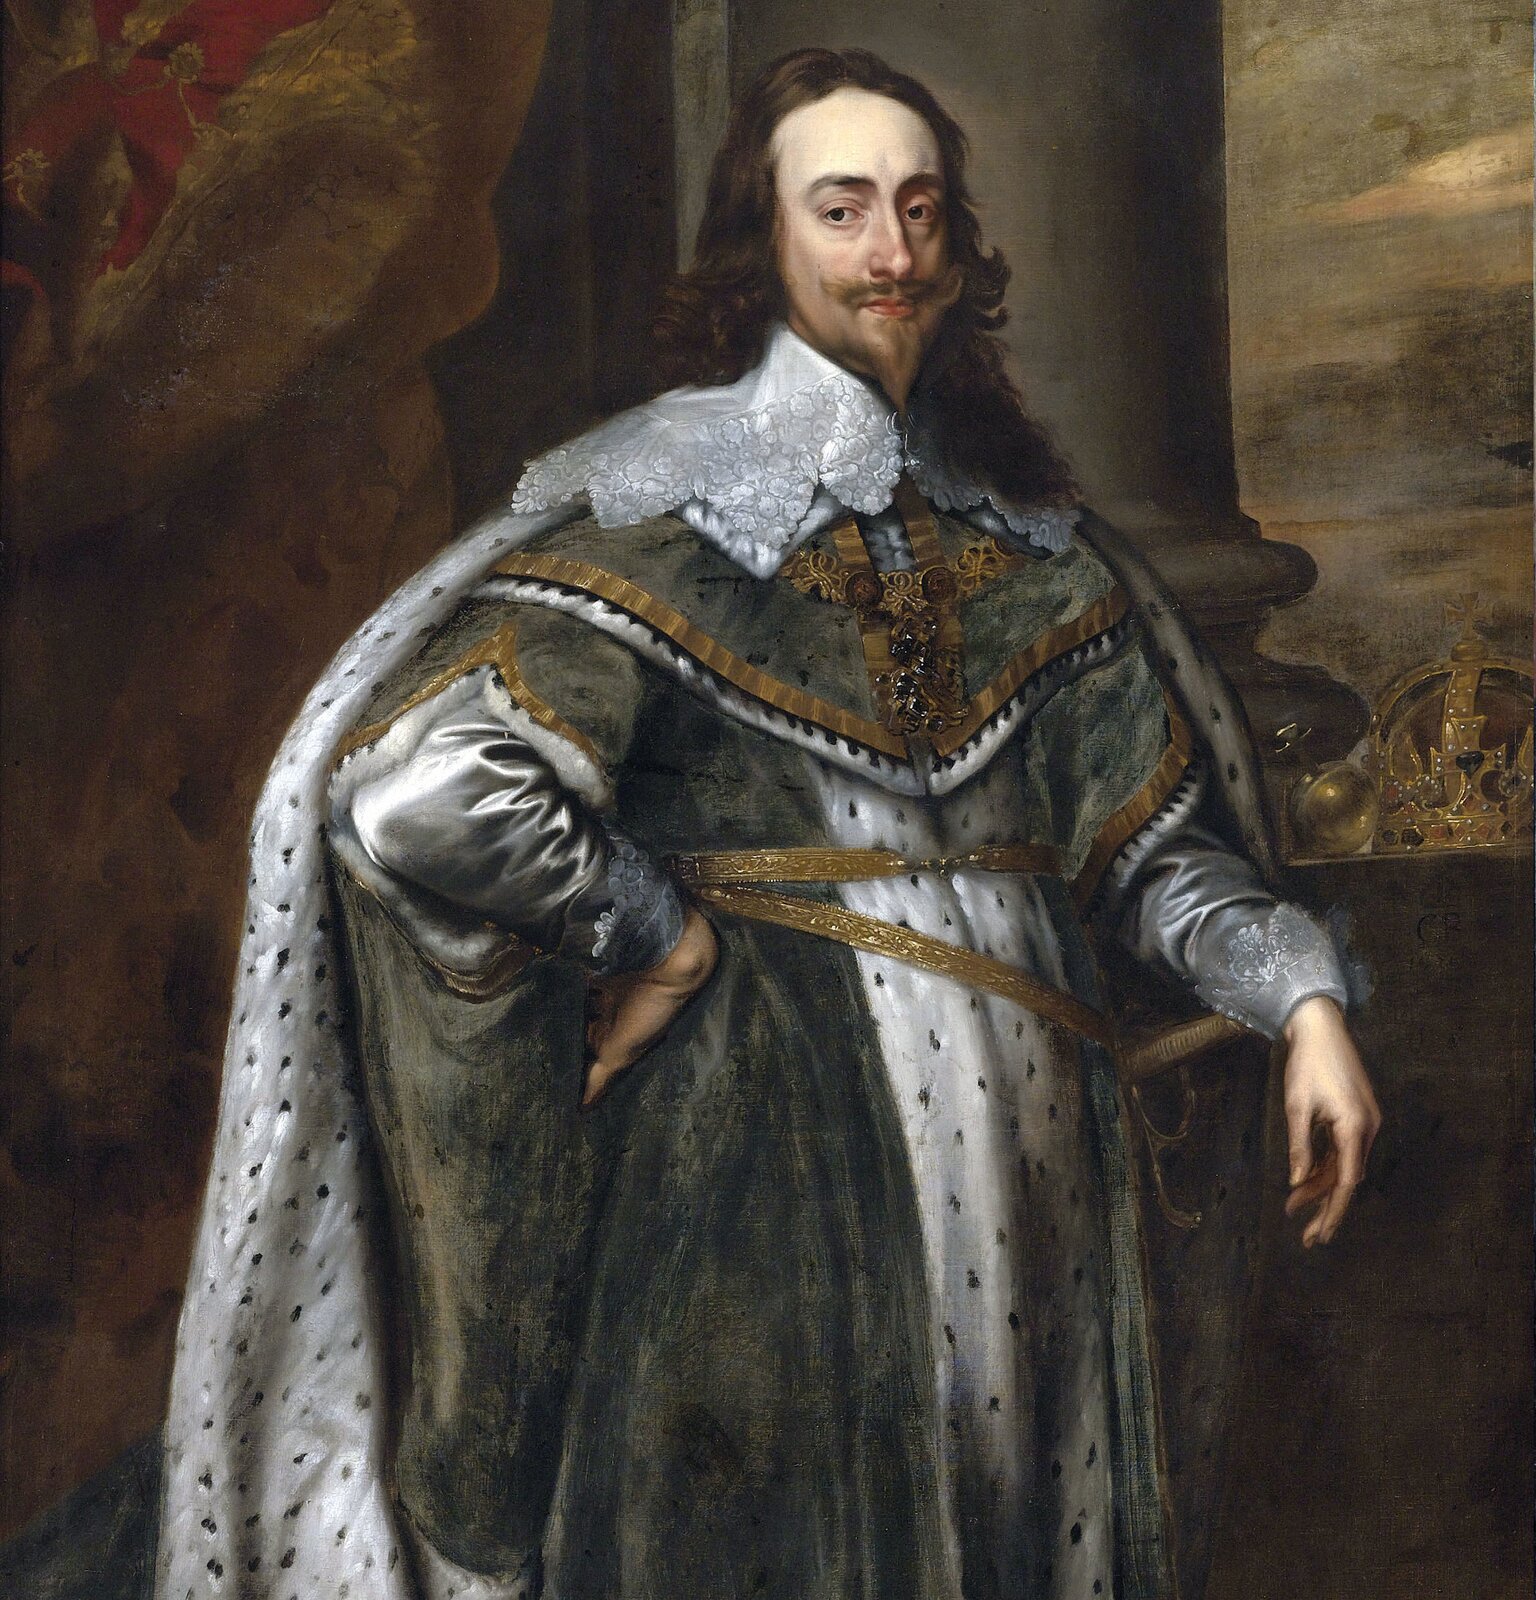 Ilustracja przedstawia portret mężczyzny w królewskim stroju. Ma długie włosy, wysokie czoło, pociągłą twarz oraz spiczastą bródkę. Po prawej stronie leżą insygnia władzy: jabłko oraz korona.